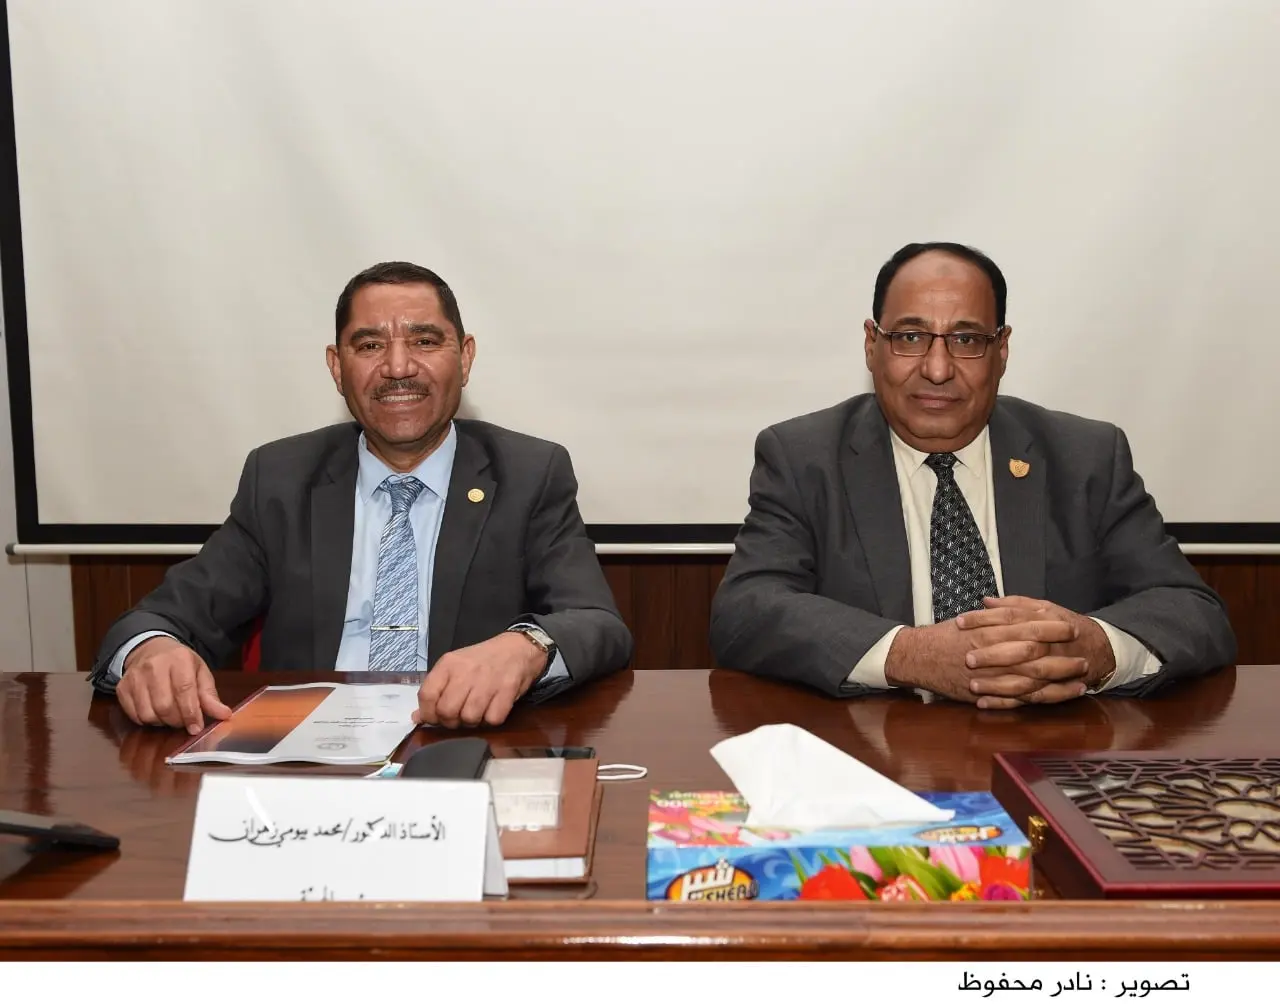 رئيس الهيئة القومية للاستشعار من البعد: إنشاء "المصرية لخدمات تقنيات الاستشعار" في انتظار موافقة الحكومة